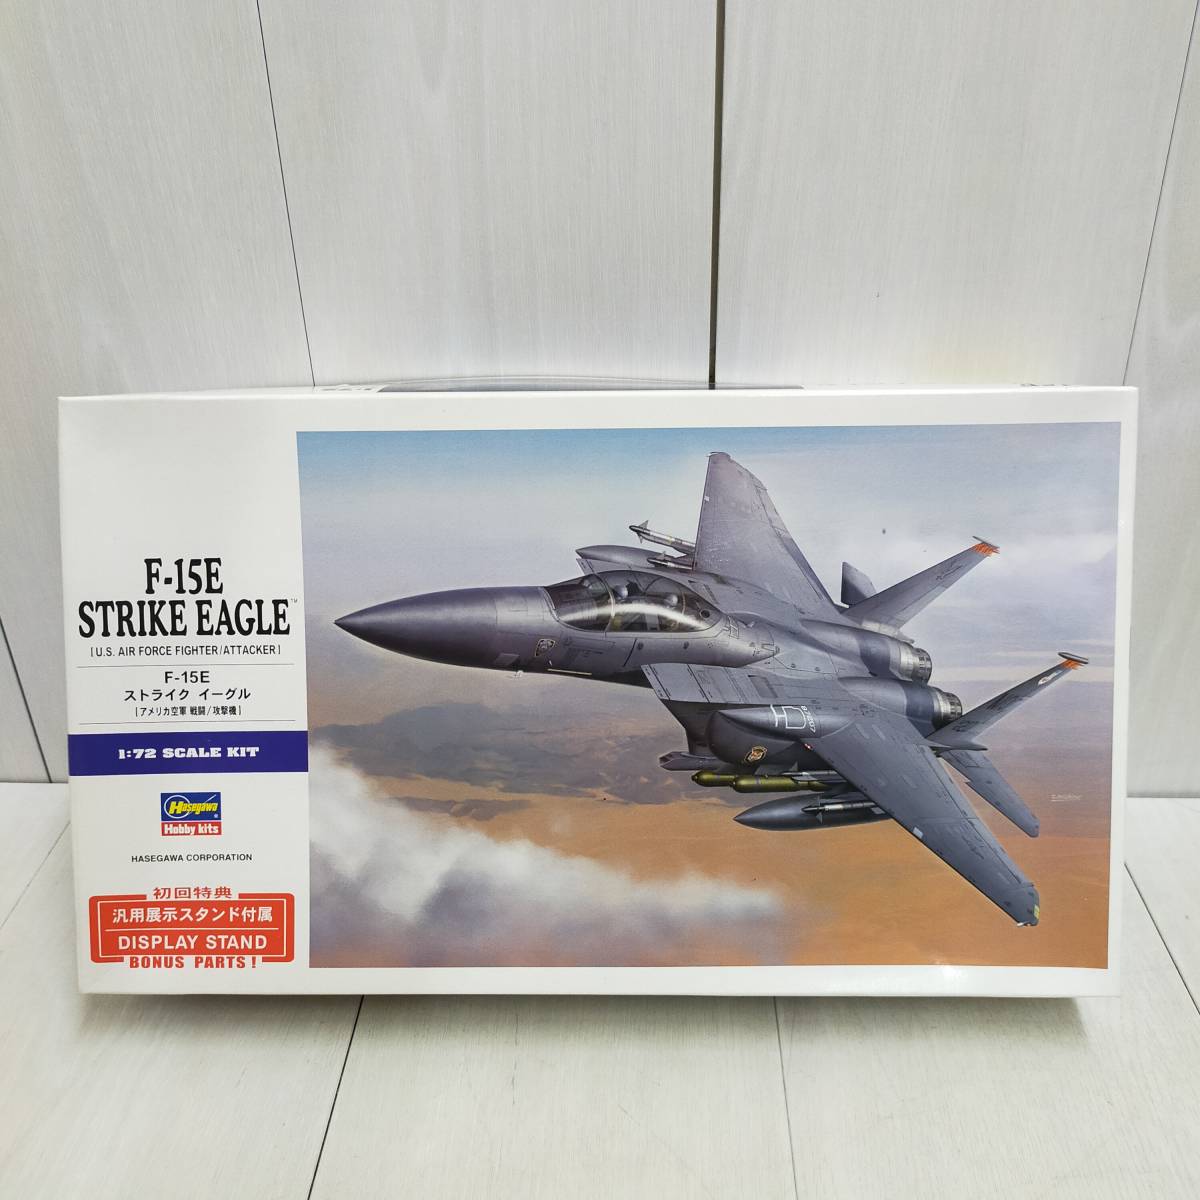 【 送料無料 】 未組立 ◆ Hasegawa F-15E ストライク イーグル 1/72 スケール 01569 ハセガワ 初回特典 E39 STRIKE EAGLE プラモ 模型